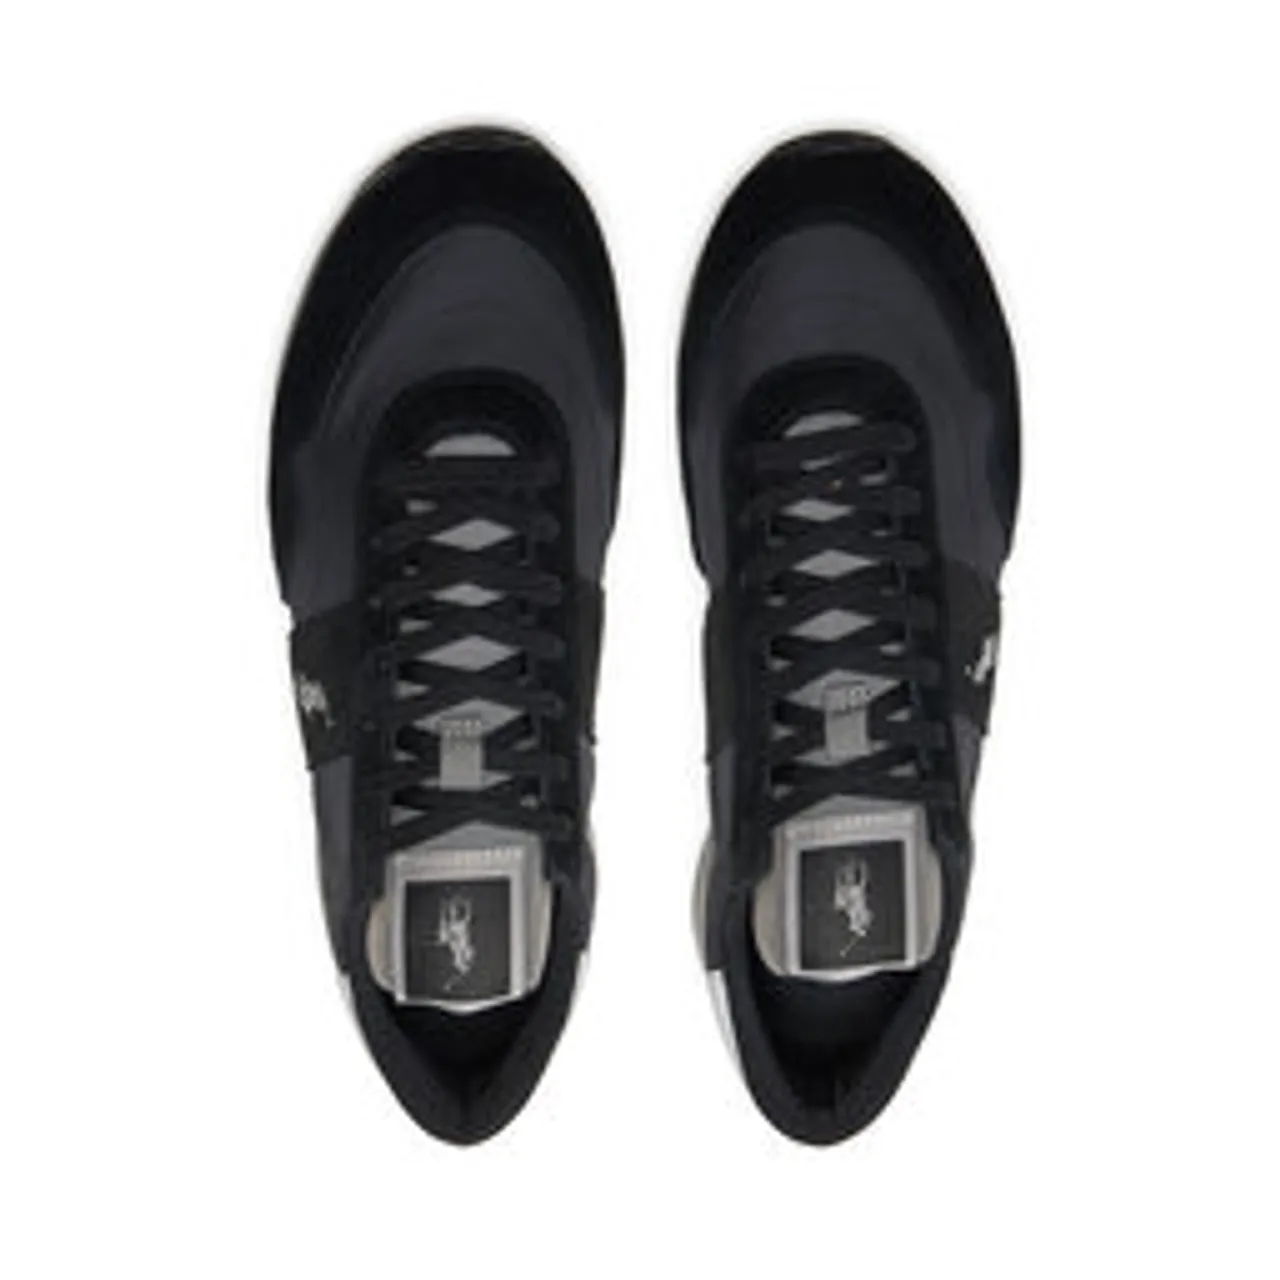 Sneakers Polo Ralph Lauren 809940764002 Black/Grey